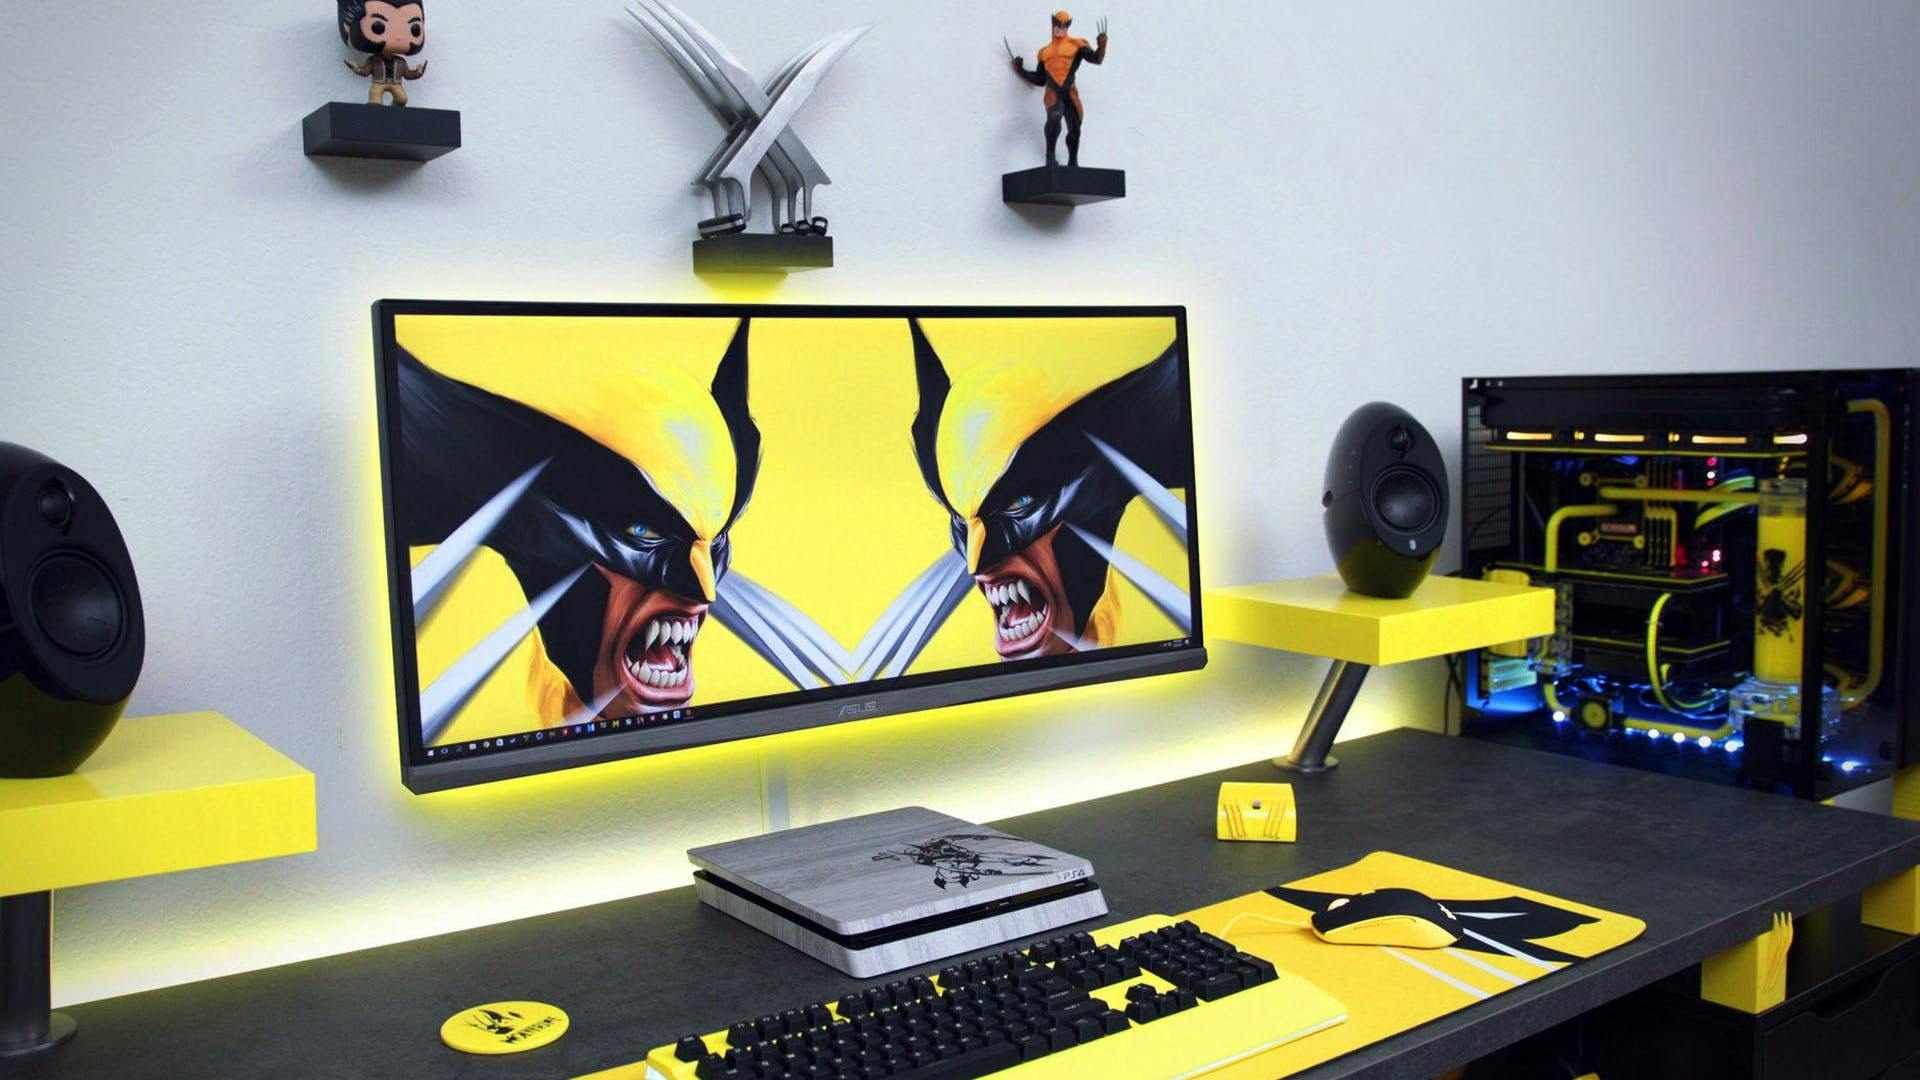 X-Men / Wolverine Themed gaming setup, minimalistisch exekutiert - so lieben wir es 